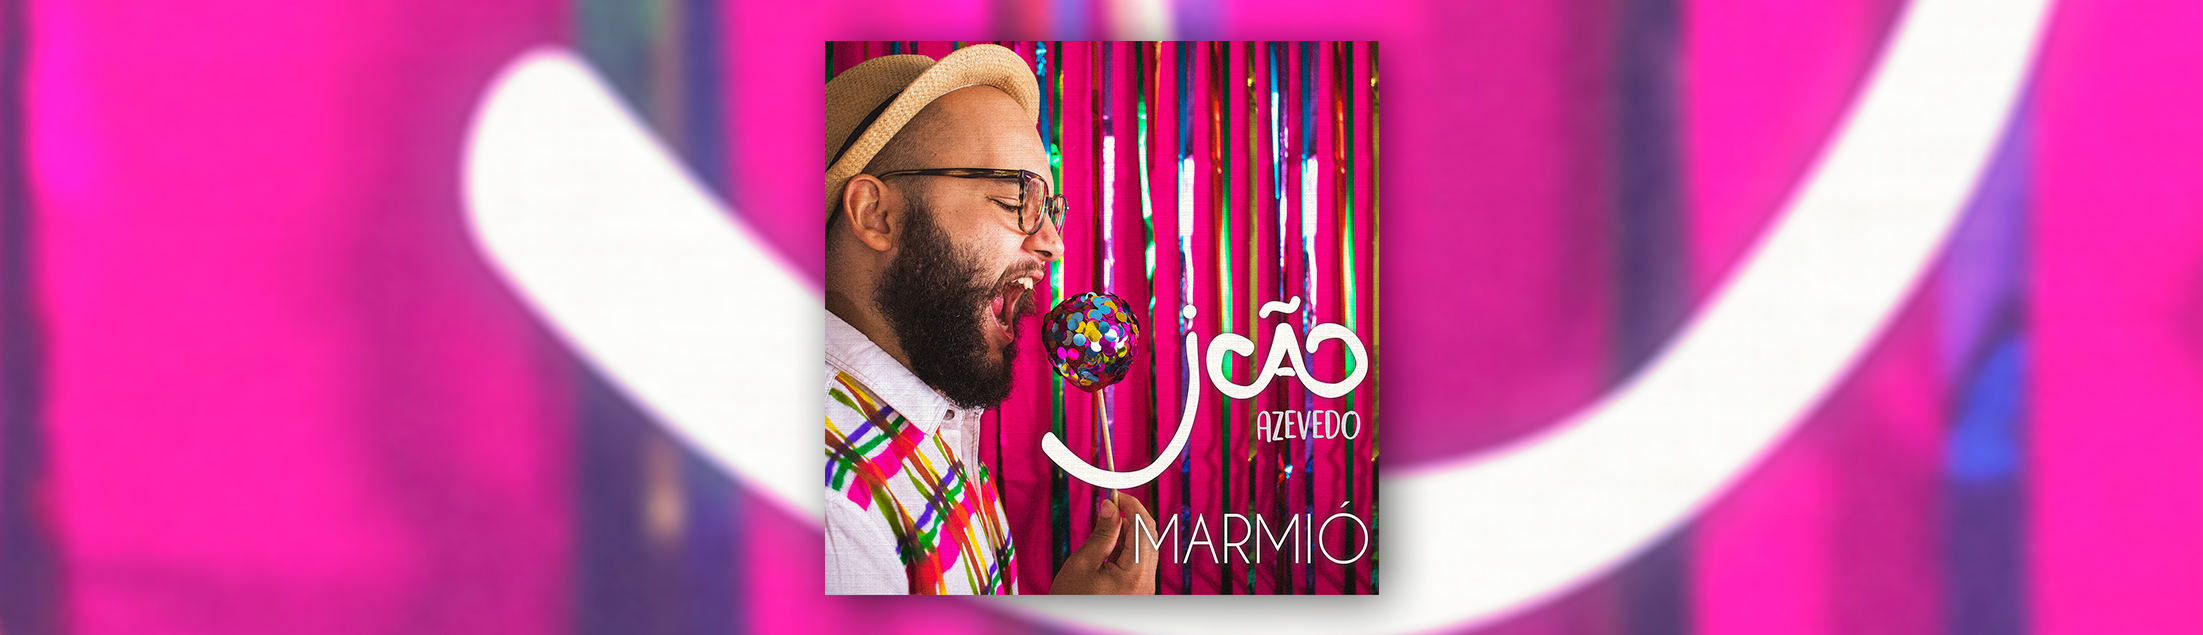 João Azevedo homenageia festas juninas no single “Marmió”